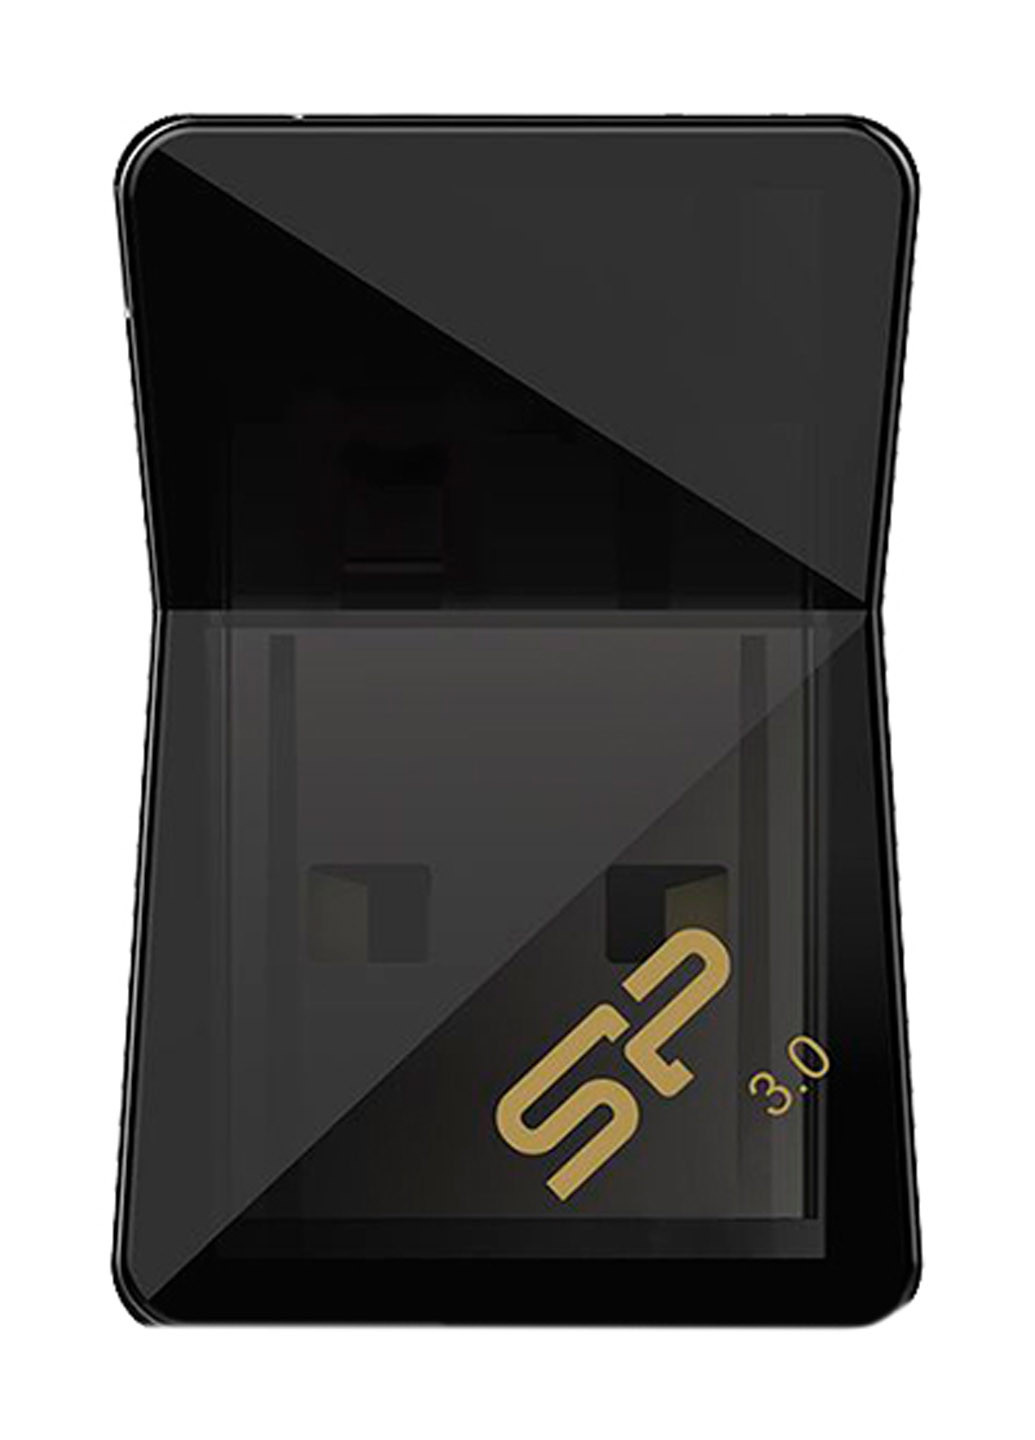 Флеш память USB Jewel J08 32GB Black (SP032GBUF3J08V1K) Silicon Power флеш память usb silicon power jewel j08 32gb black (sp032gbuf3j08v1k) (132007742)